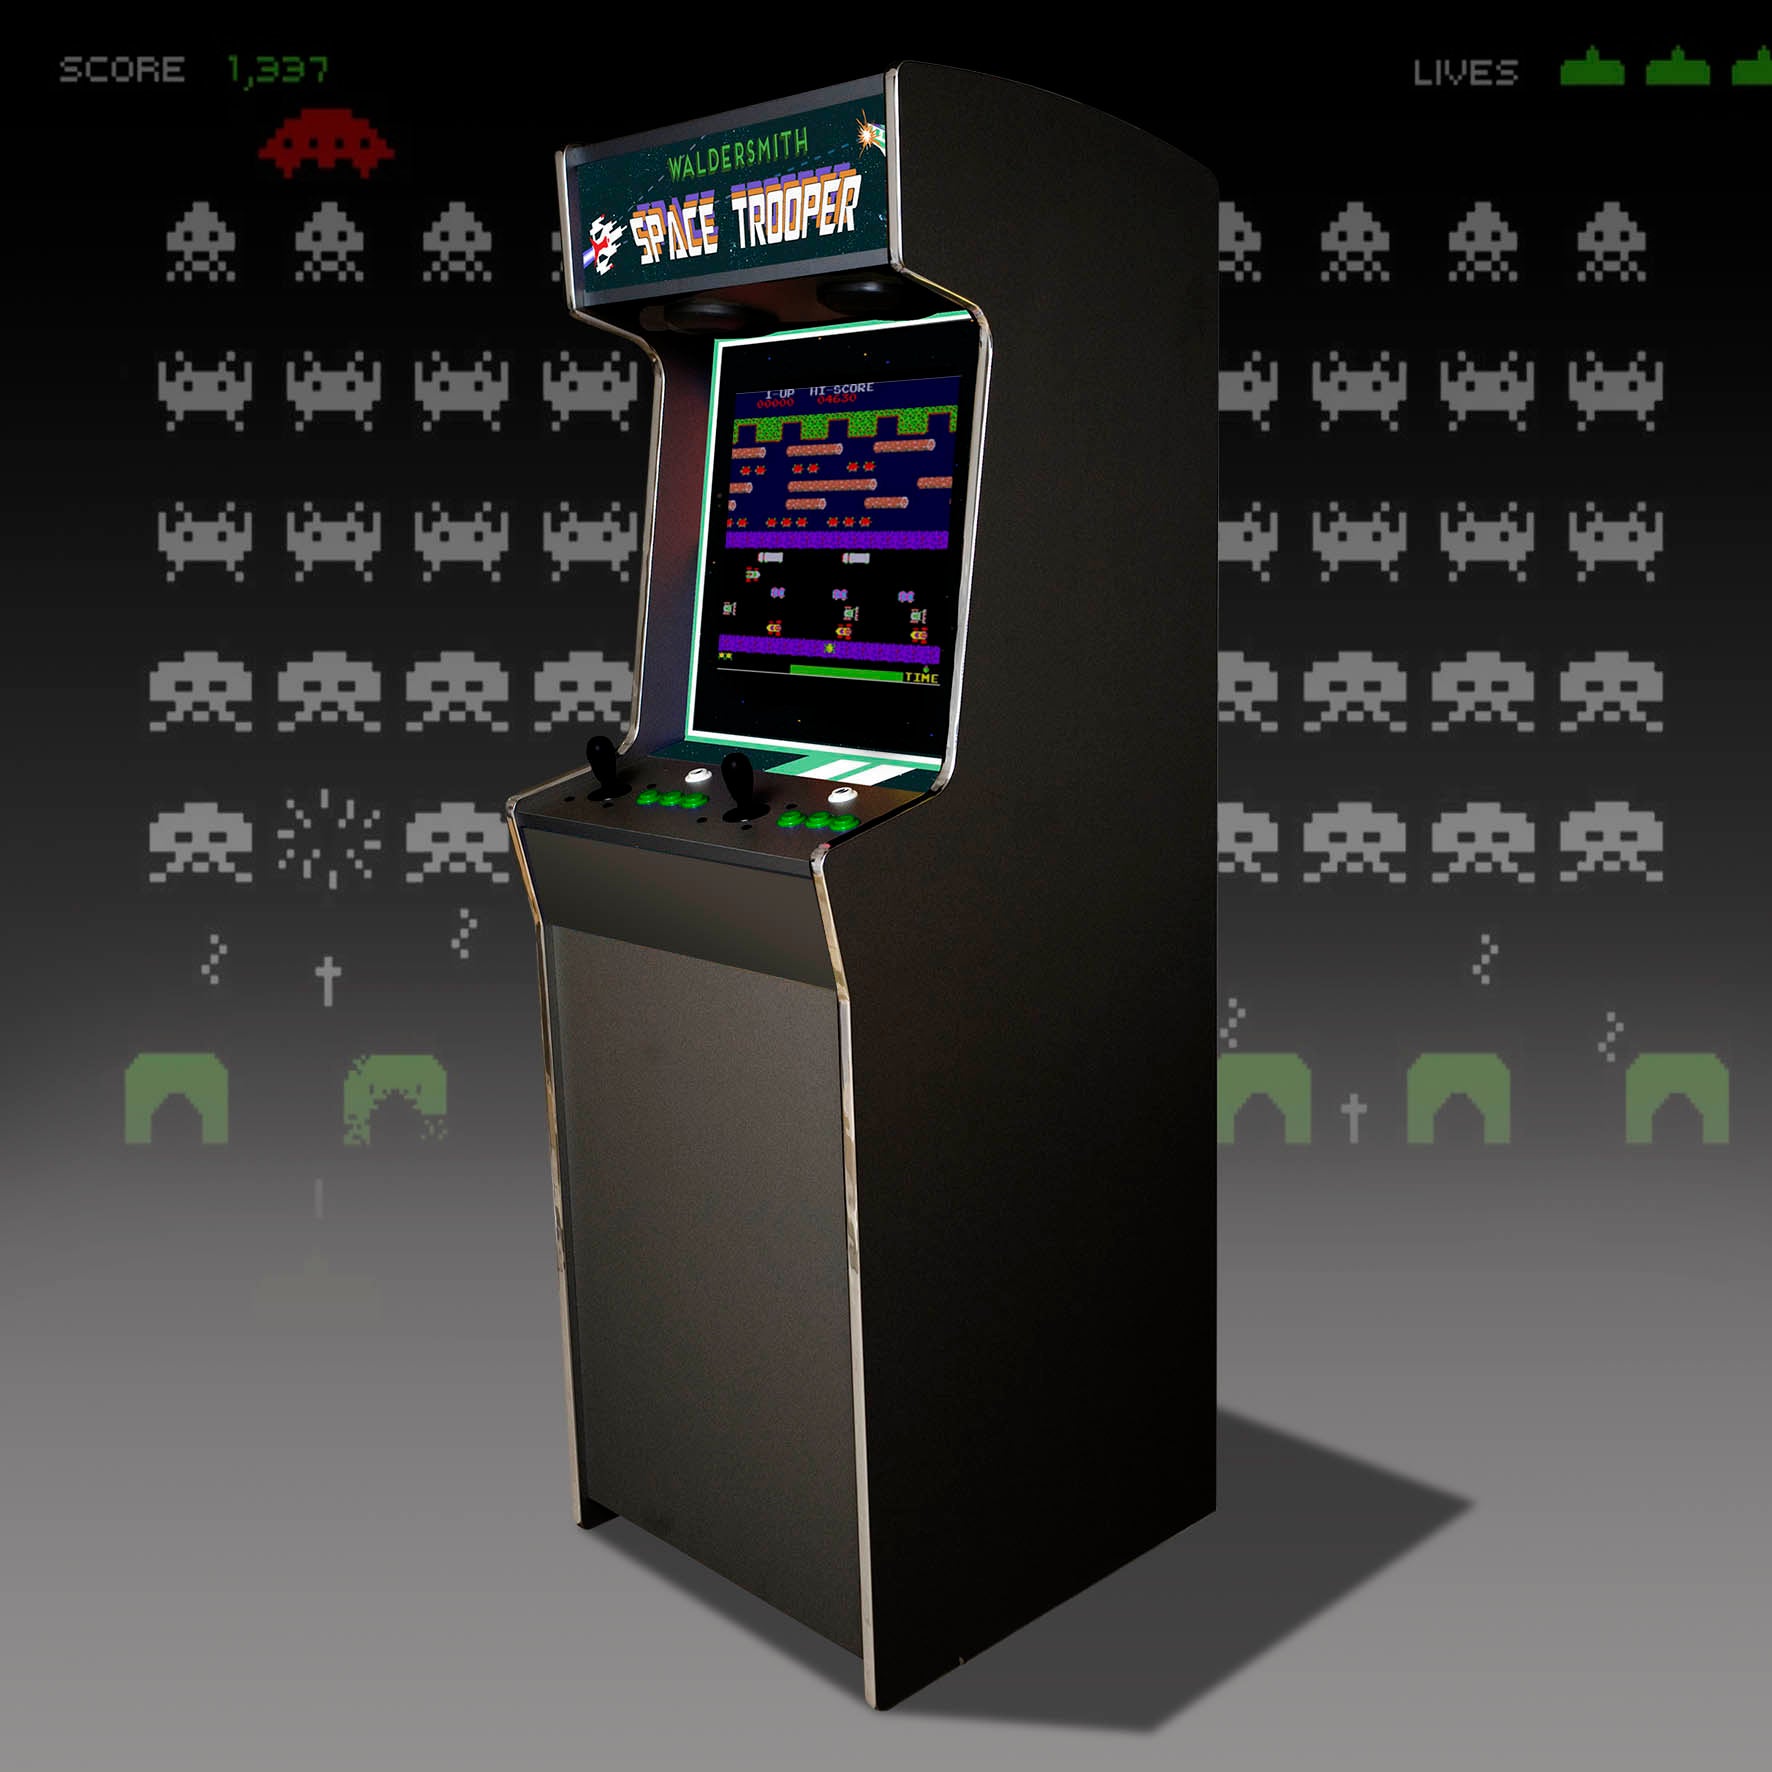 Space Trooper Arcade Machine by Waldersmith